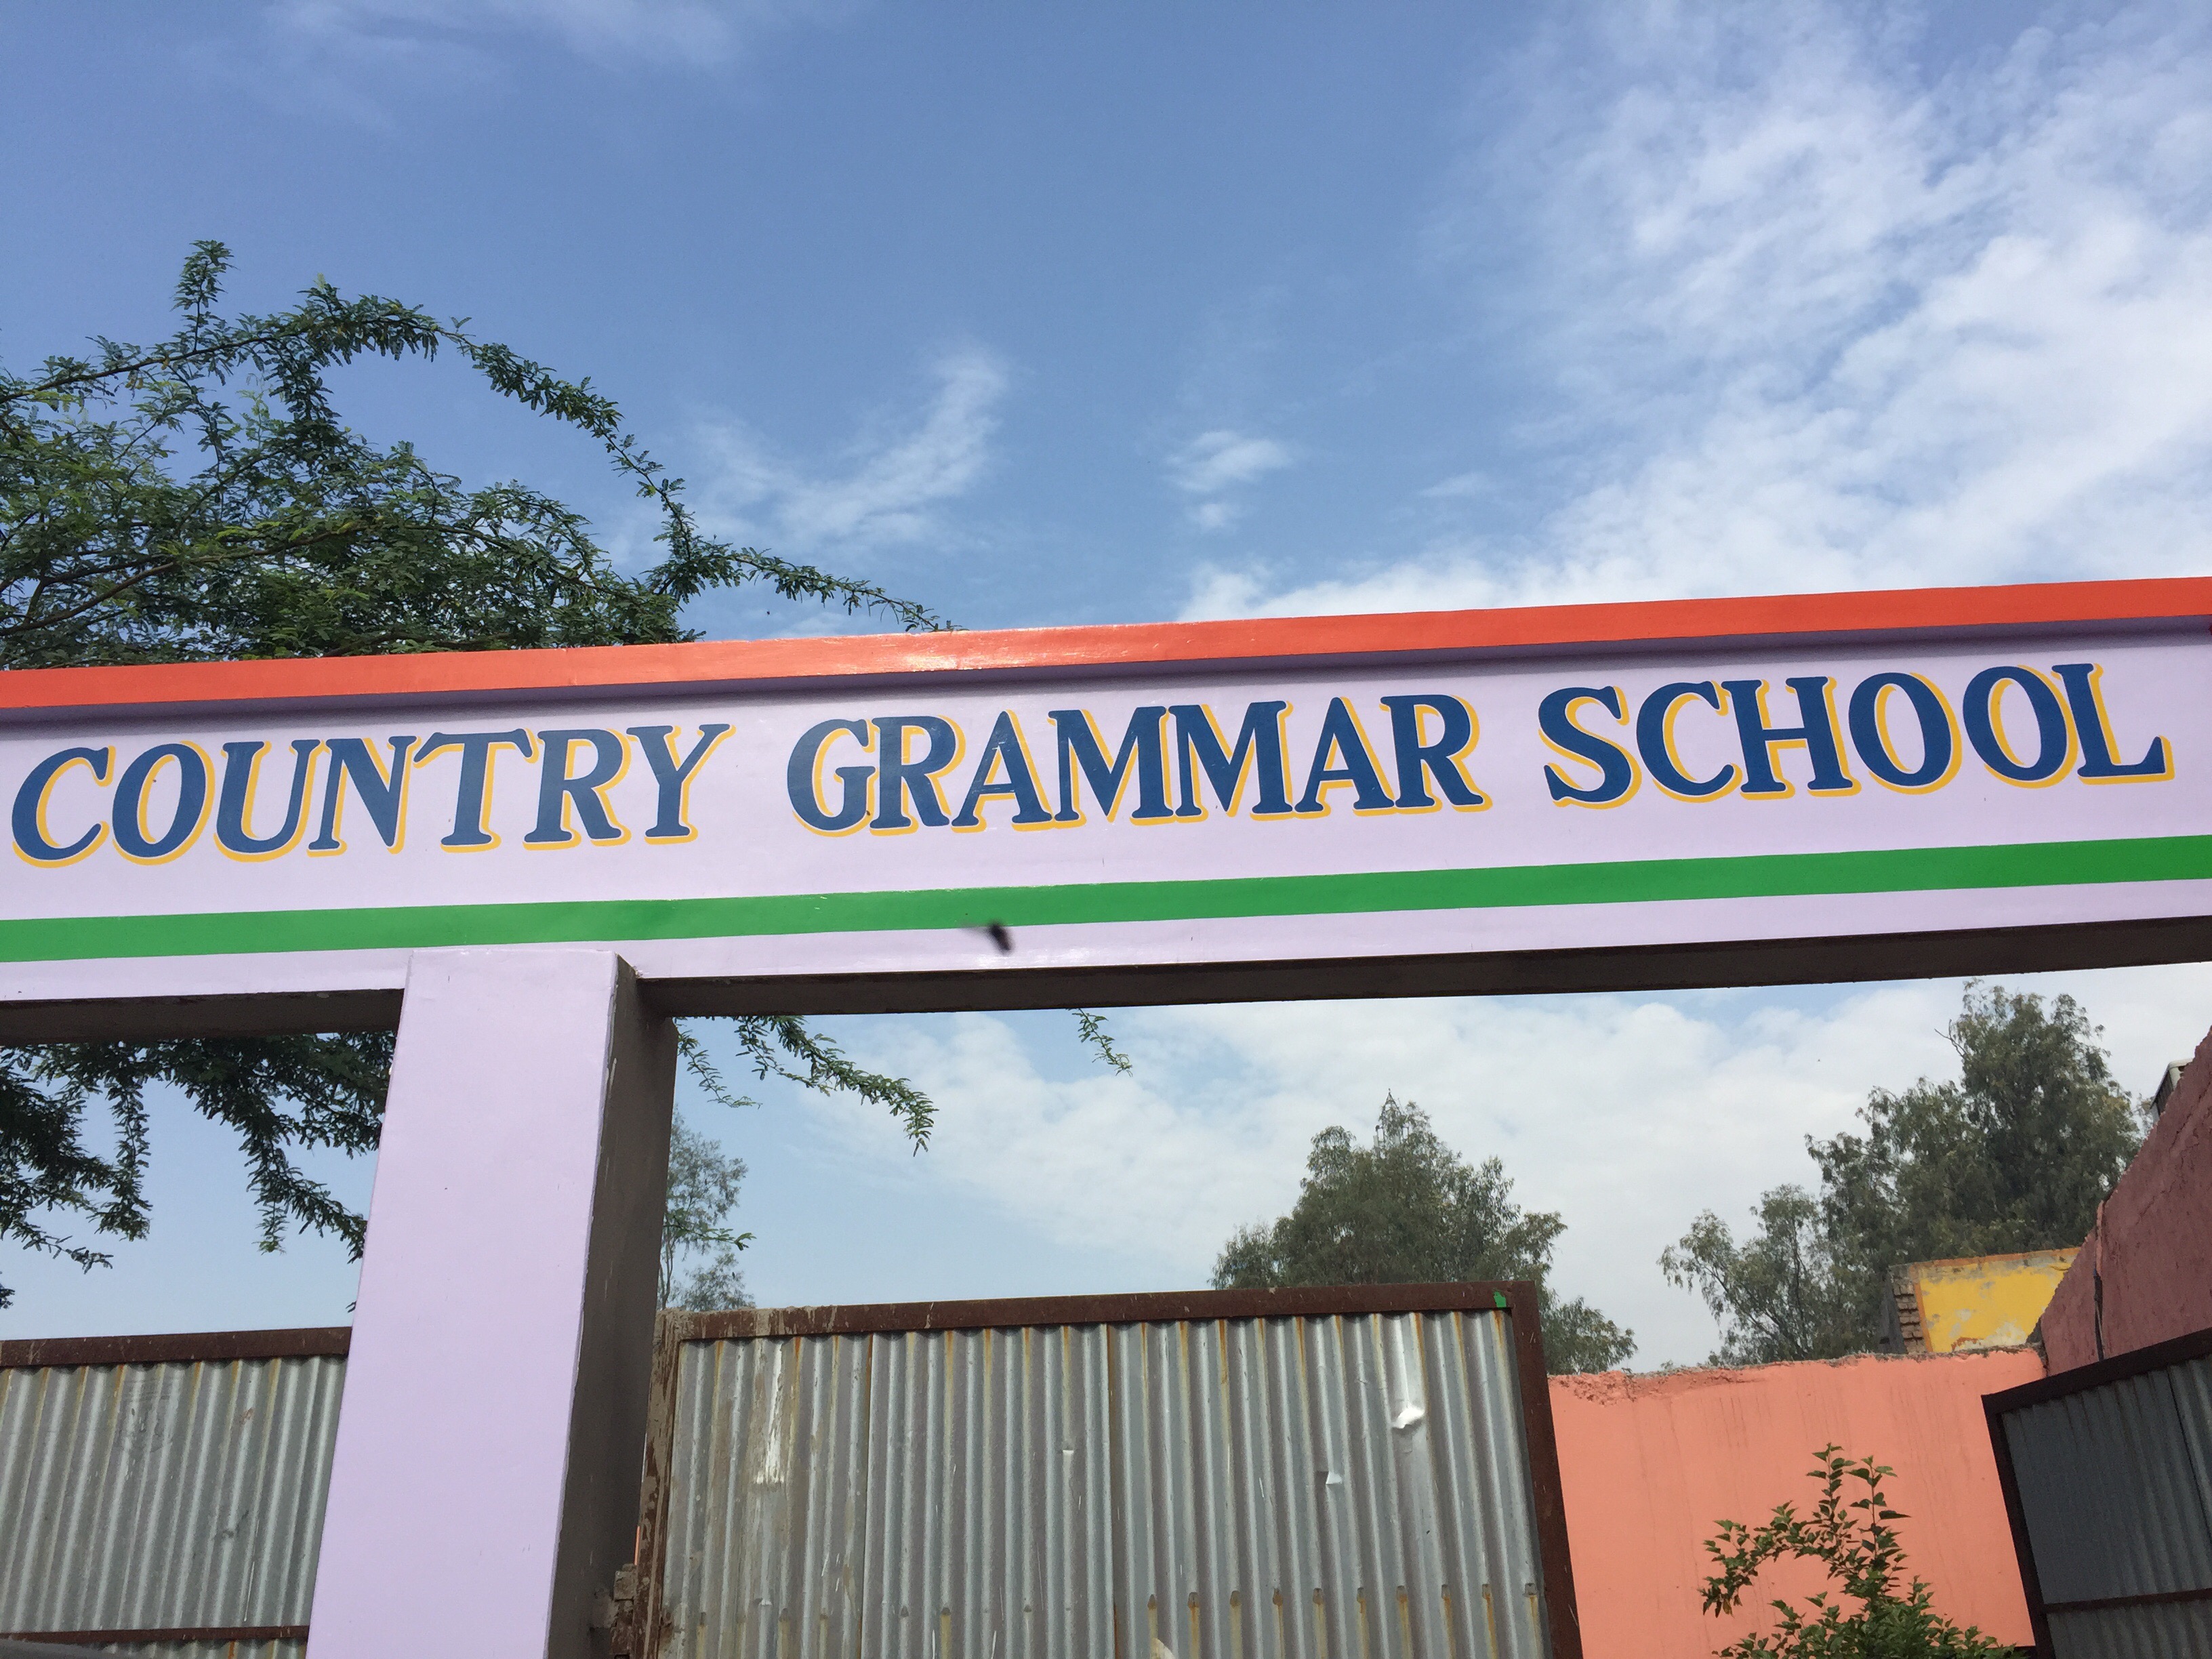 Country Grammar School|Schools|Education